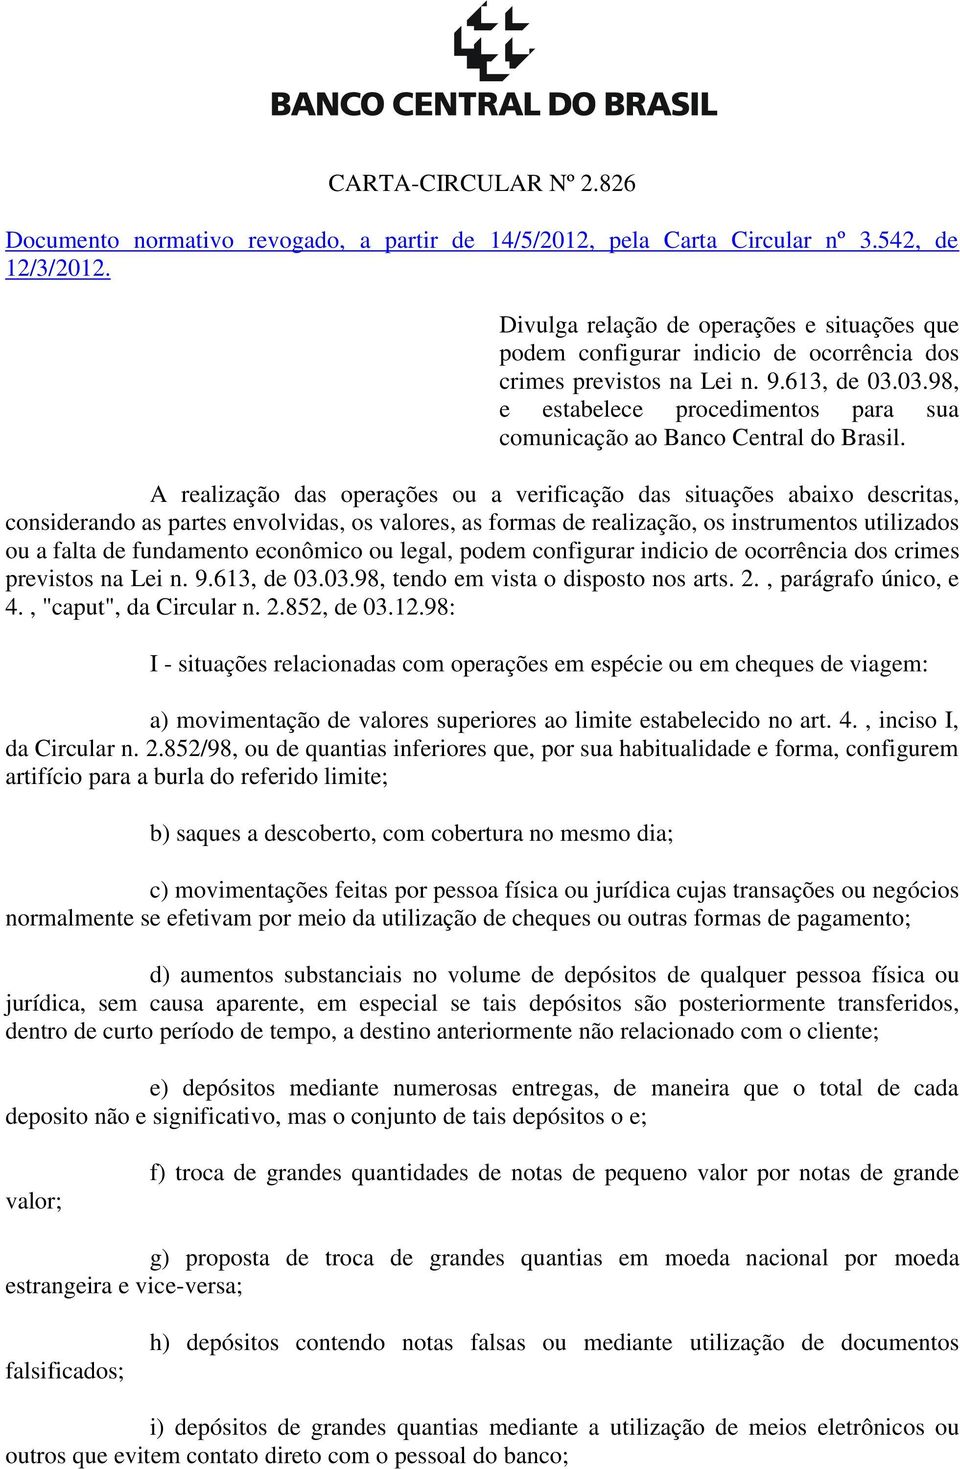 03.98, e estabelece procedimentos para sua comunicação ao Banco Central do Brasil.